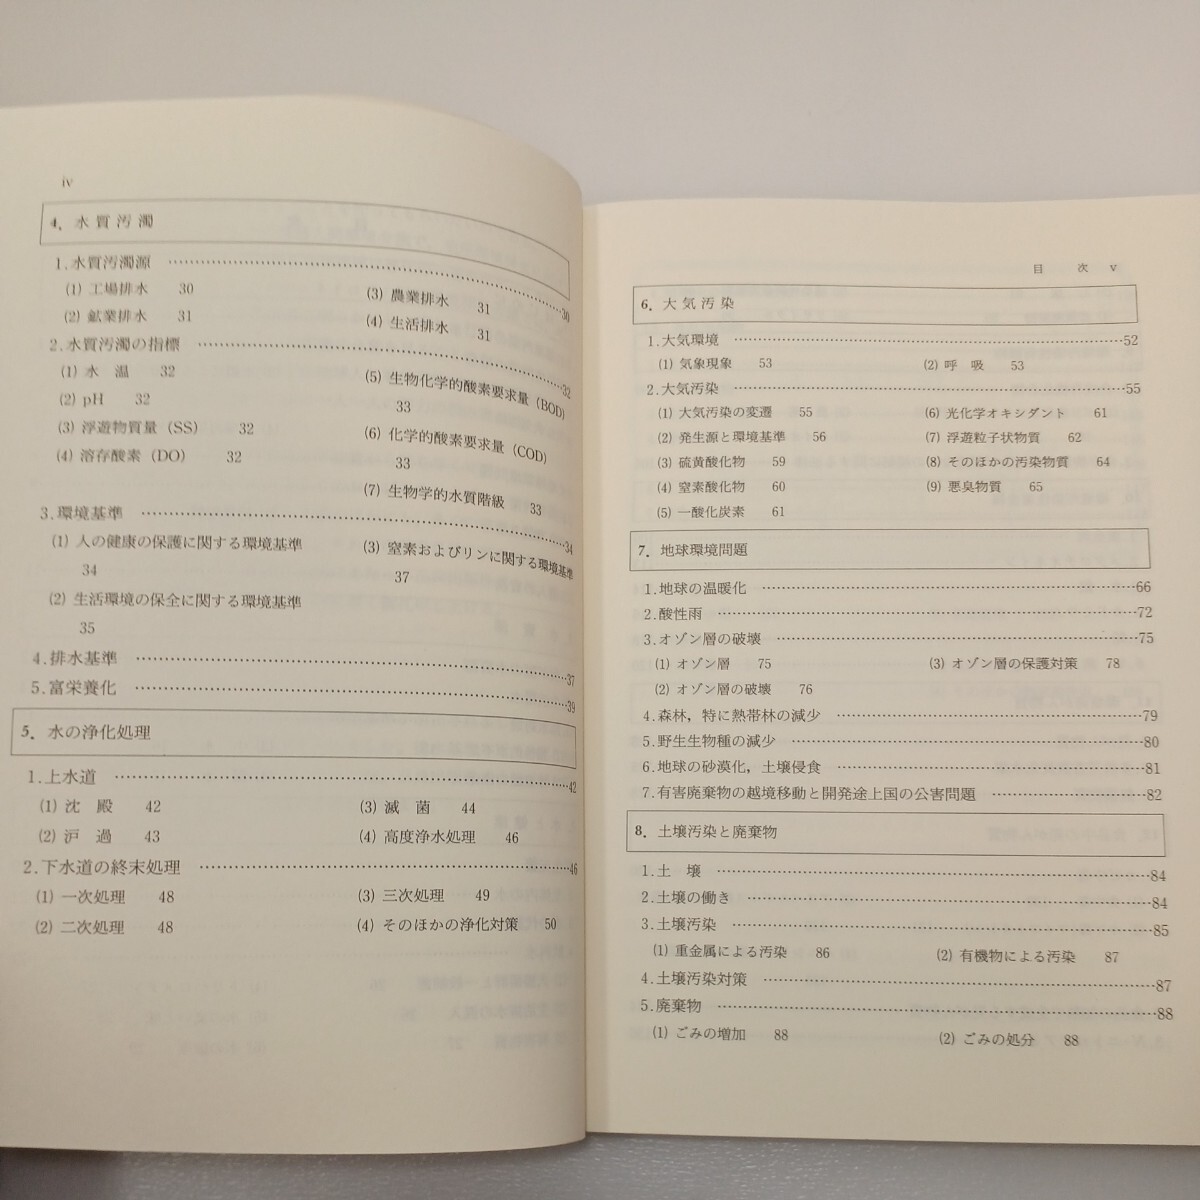 zaa-556♪生活環境概説 　保田 茂次郎(著) 三共出版 (1992/10/1)